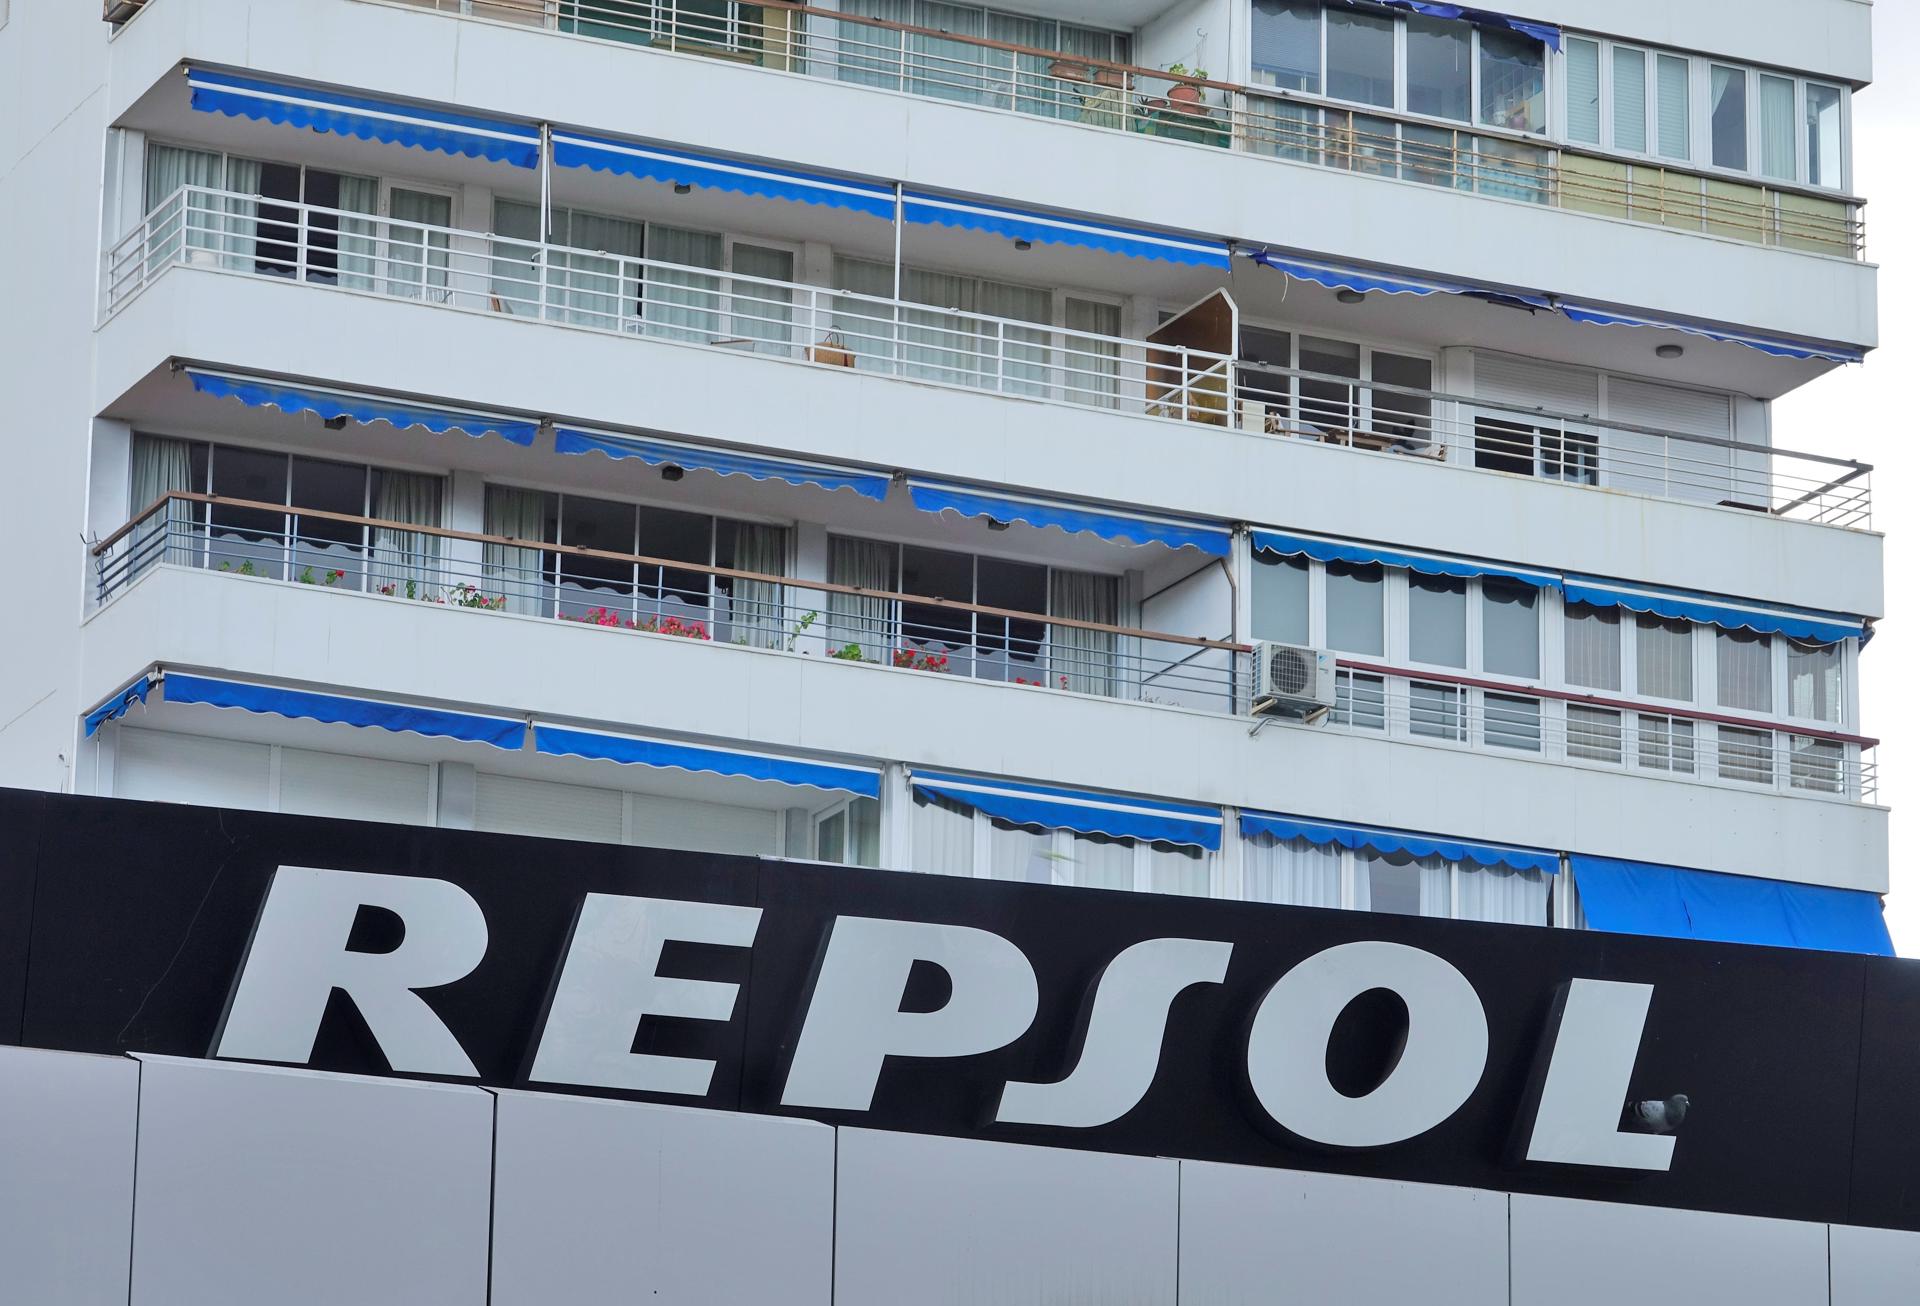 Detalle del logotipo de Repsol en una gasolinera.  EFE/ Mauritz Antin